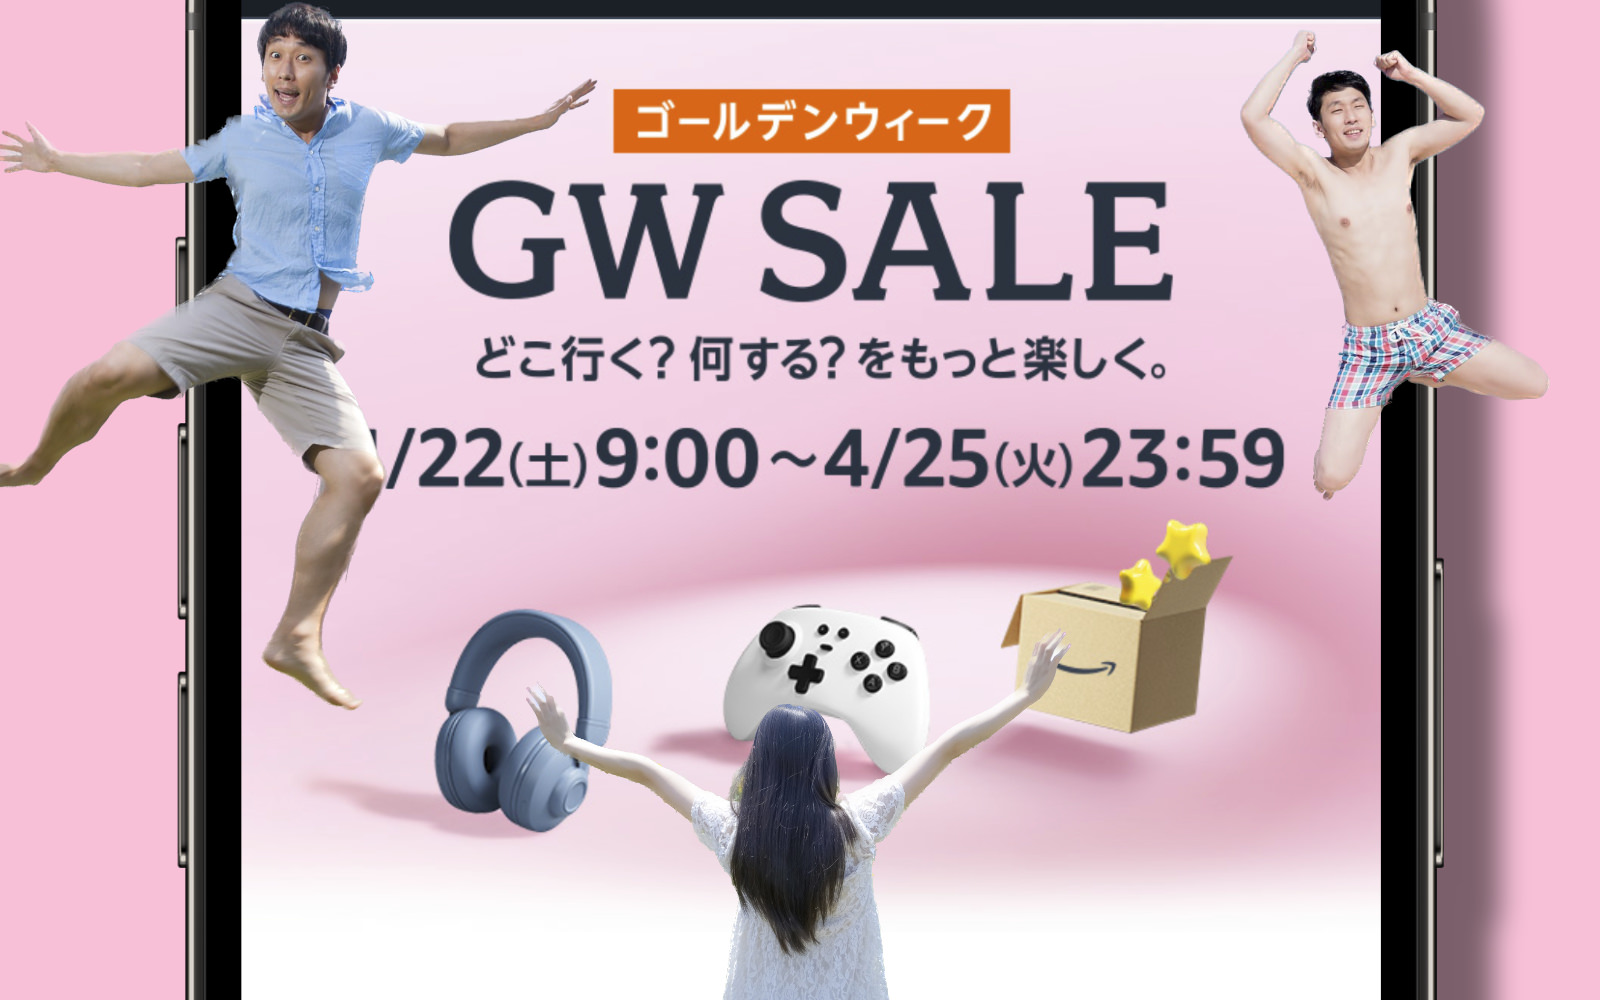 Amazon-Golden-Week-Sale-Top.jpg